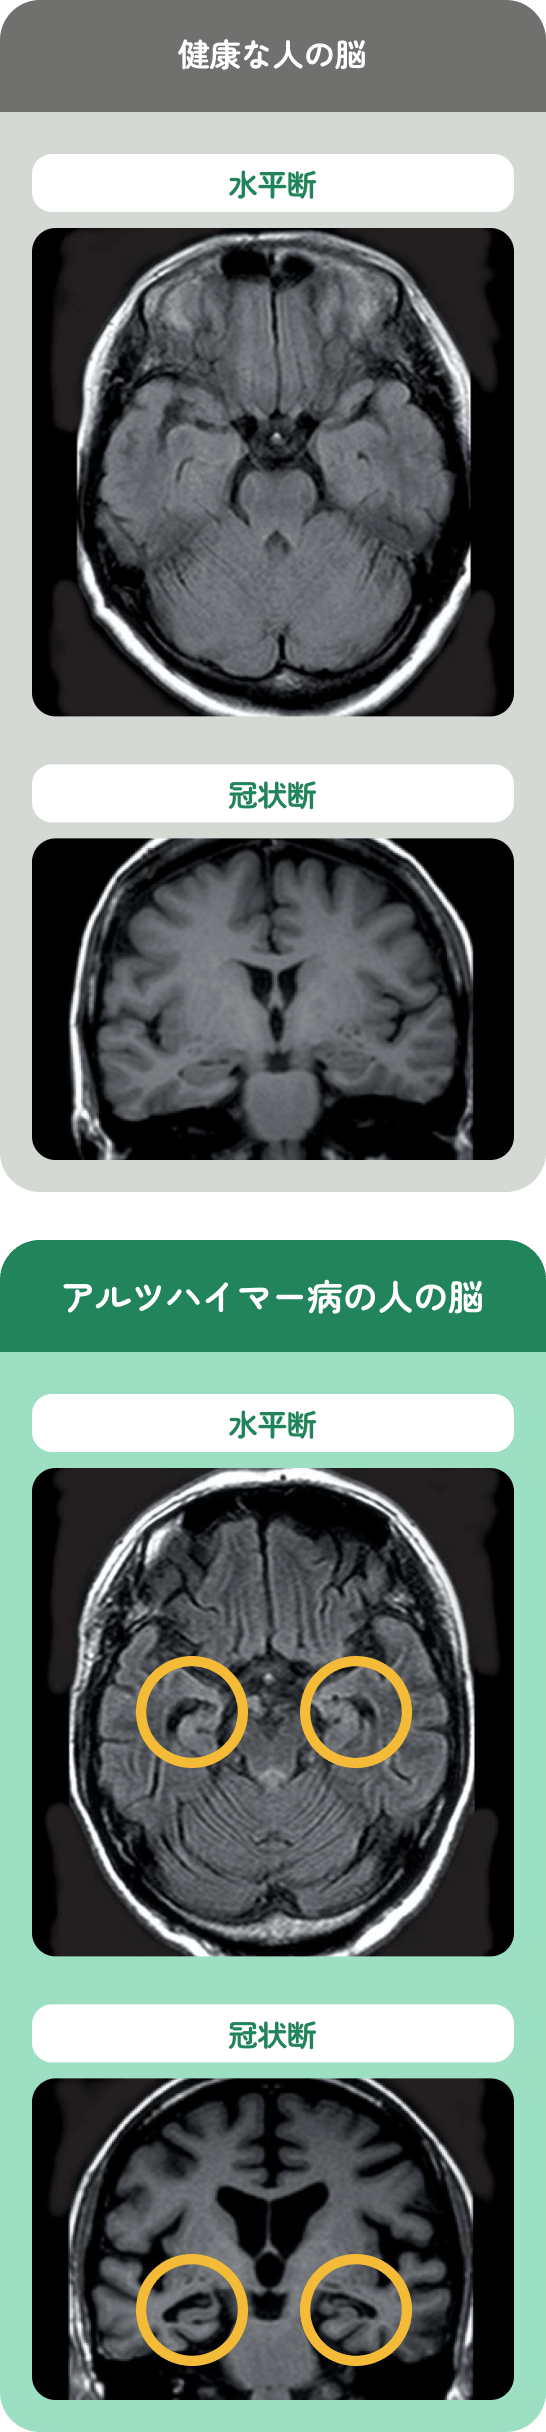 健康な人の脳とアルツハイマー病の人の脳の脳断面図。（それぞれの水平断と冠状断で、脳に違いが見られる）